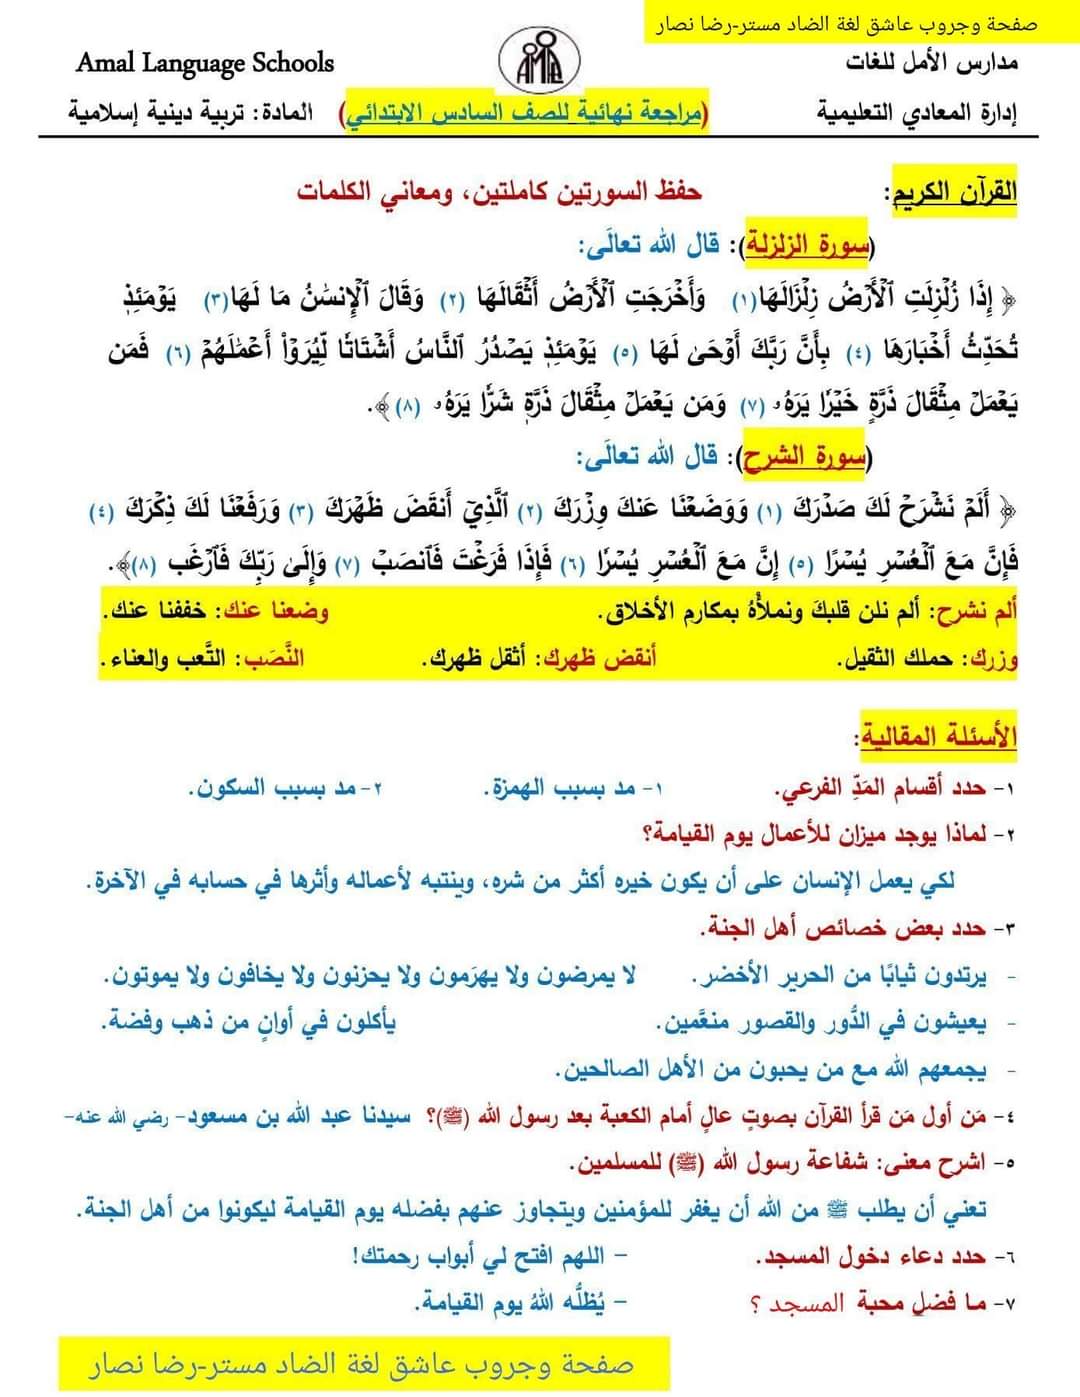 مراجعة ليلة الامتحان تربية إسلامية الصف السادس الترم الثاني لمدارس الأمل للغات